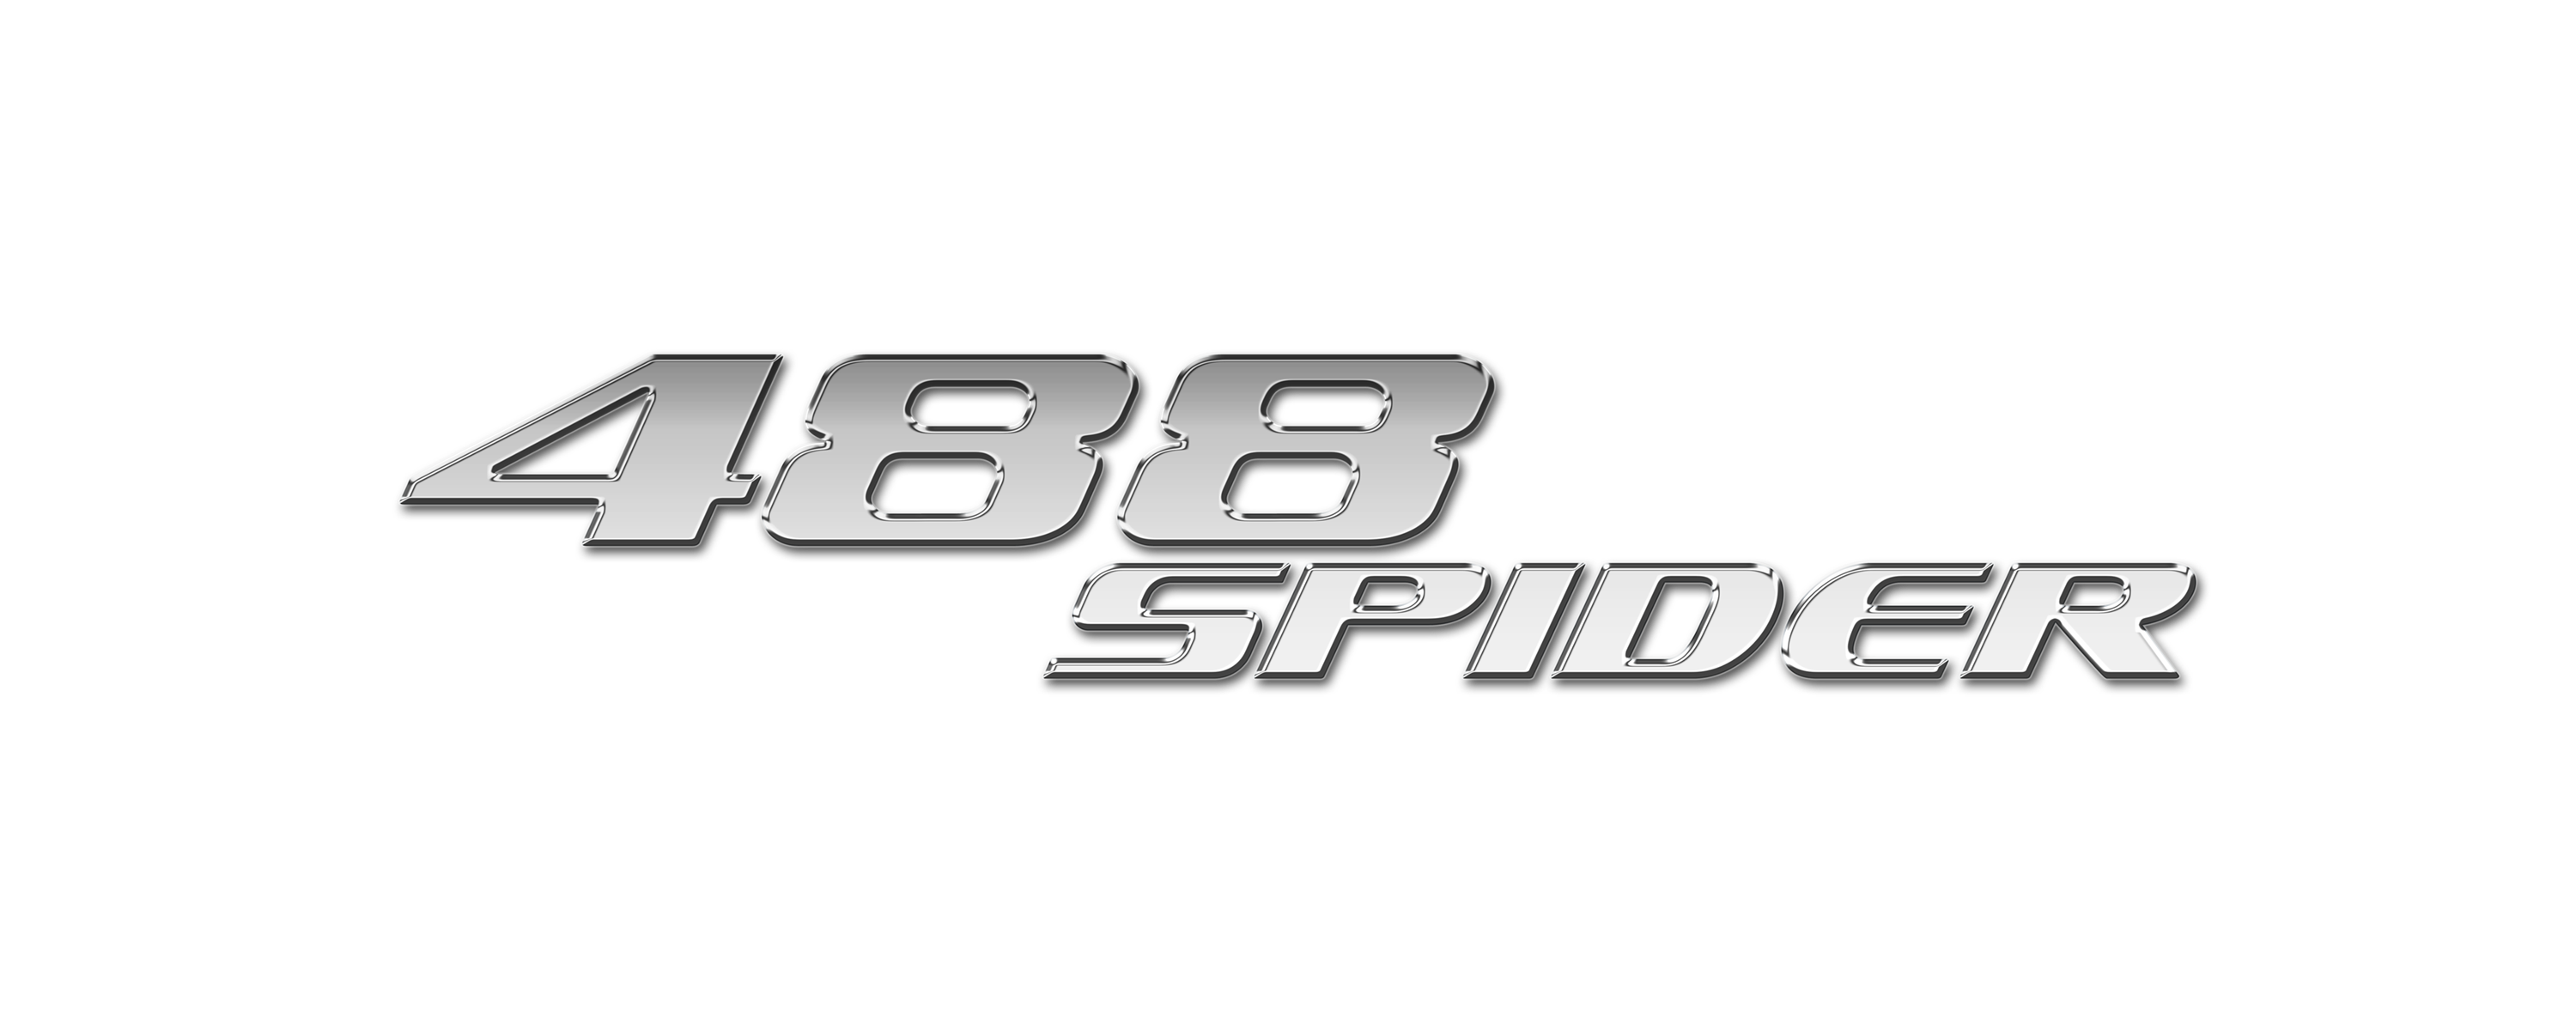 488 spider